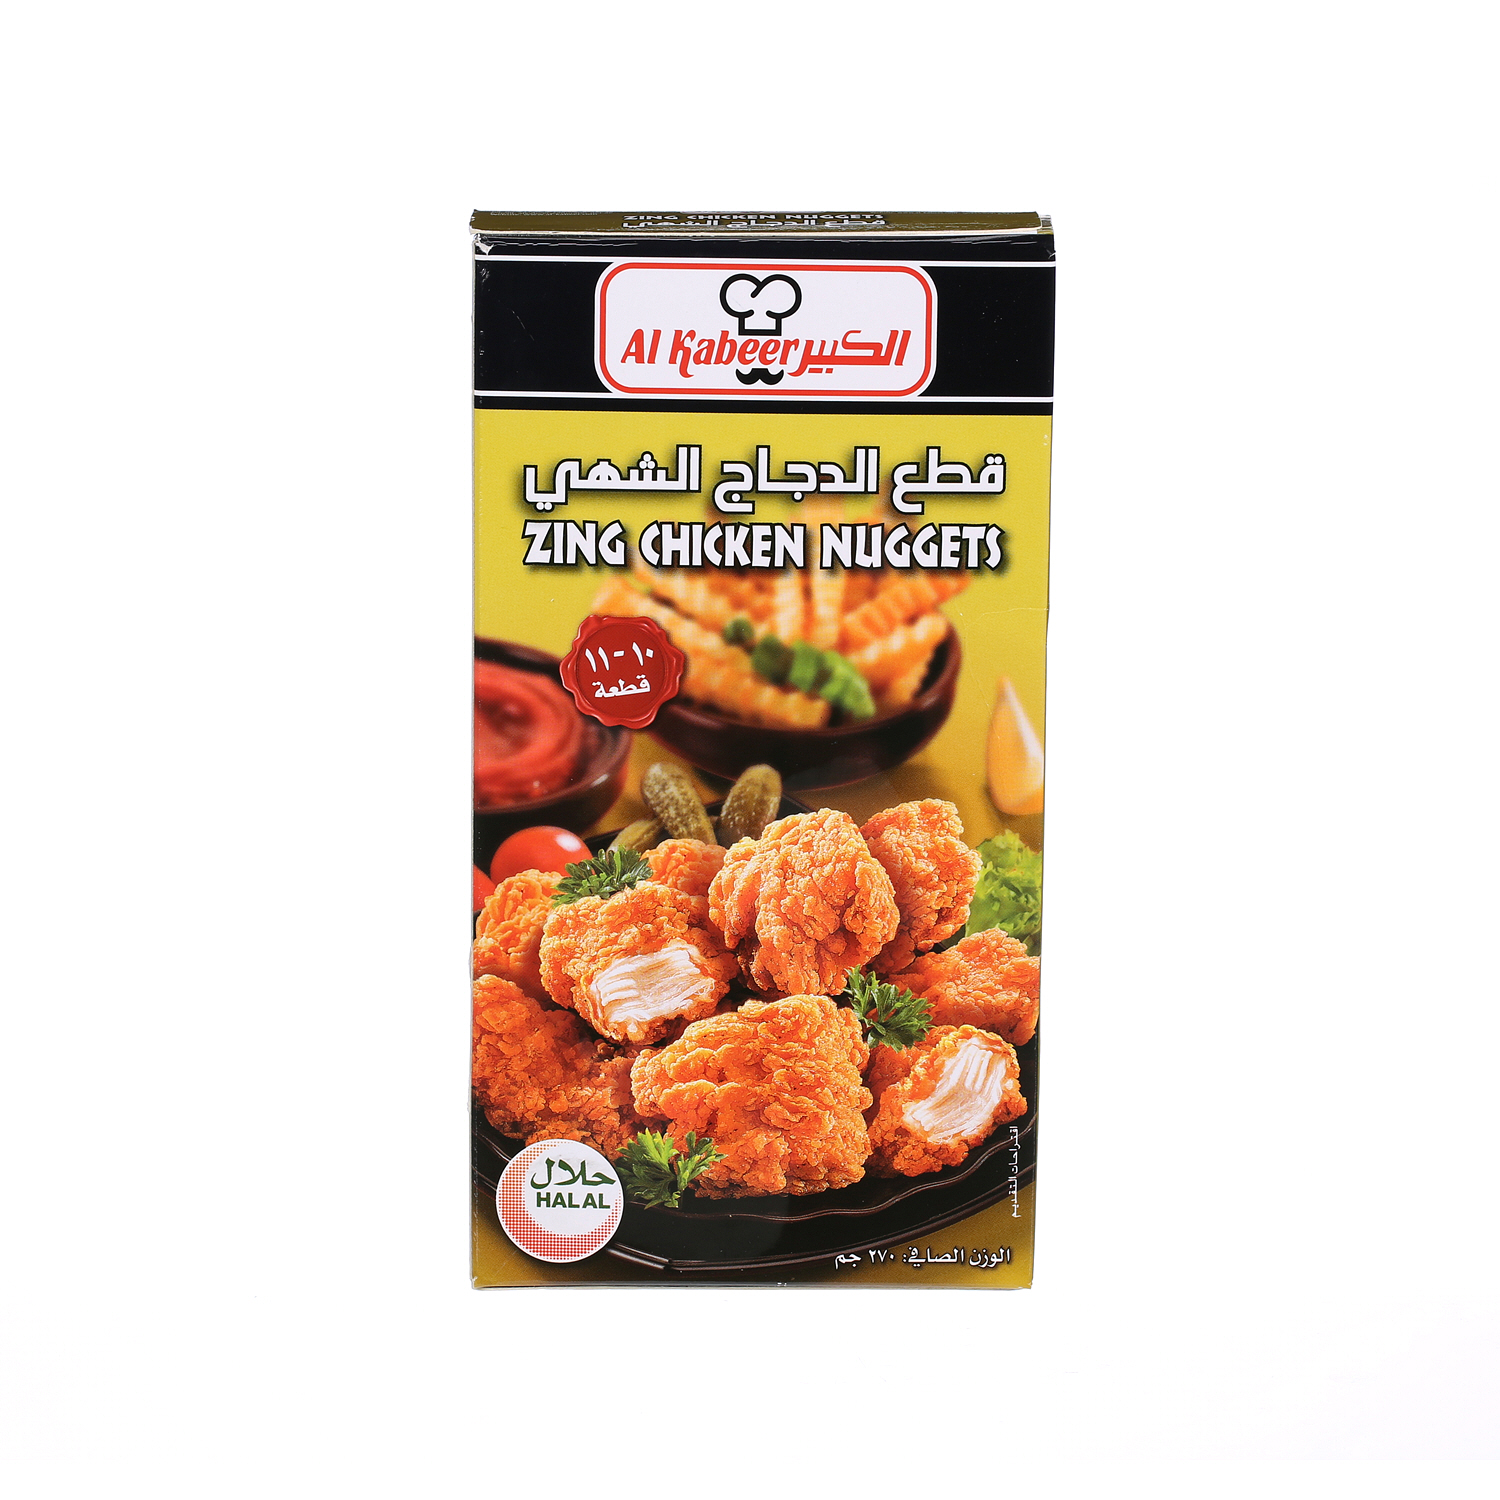 Al Kabeer Zing Chicken Nuggets 270 g